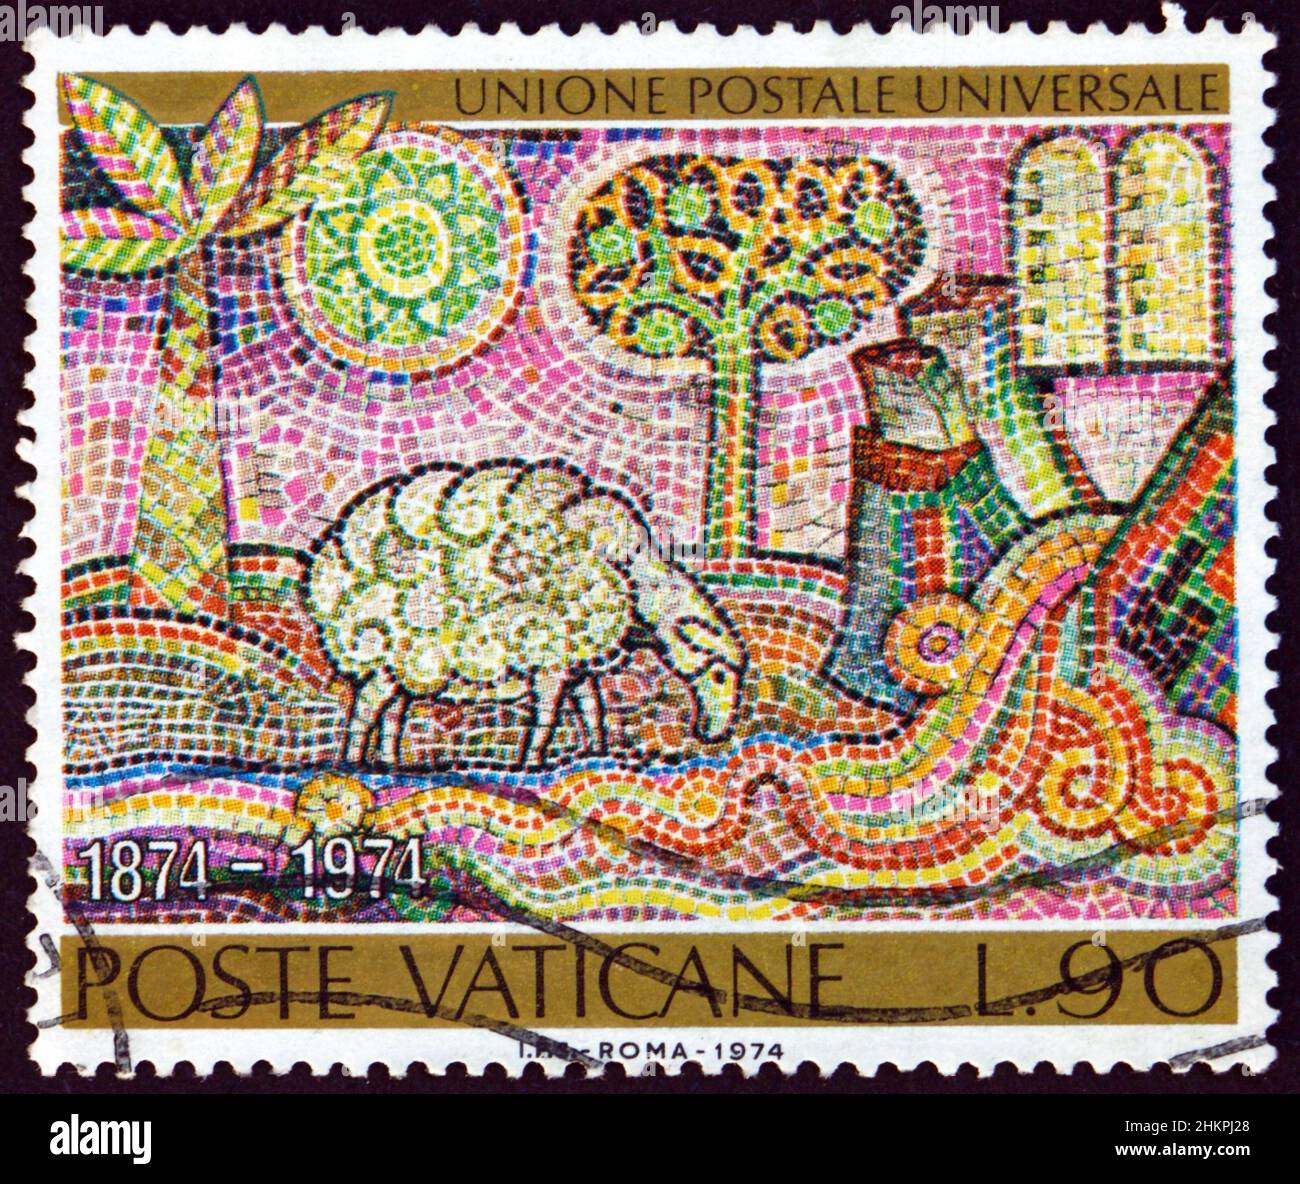 VATIKAN - UM 1974: Eine im Vatikan gedruckte Briefmarke zeigt Lamm, das aus dem Strom trinkt, sowie Gesetzestafeln, Mosaik, um 1974 Stockfoto